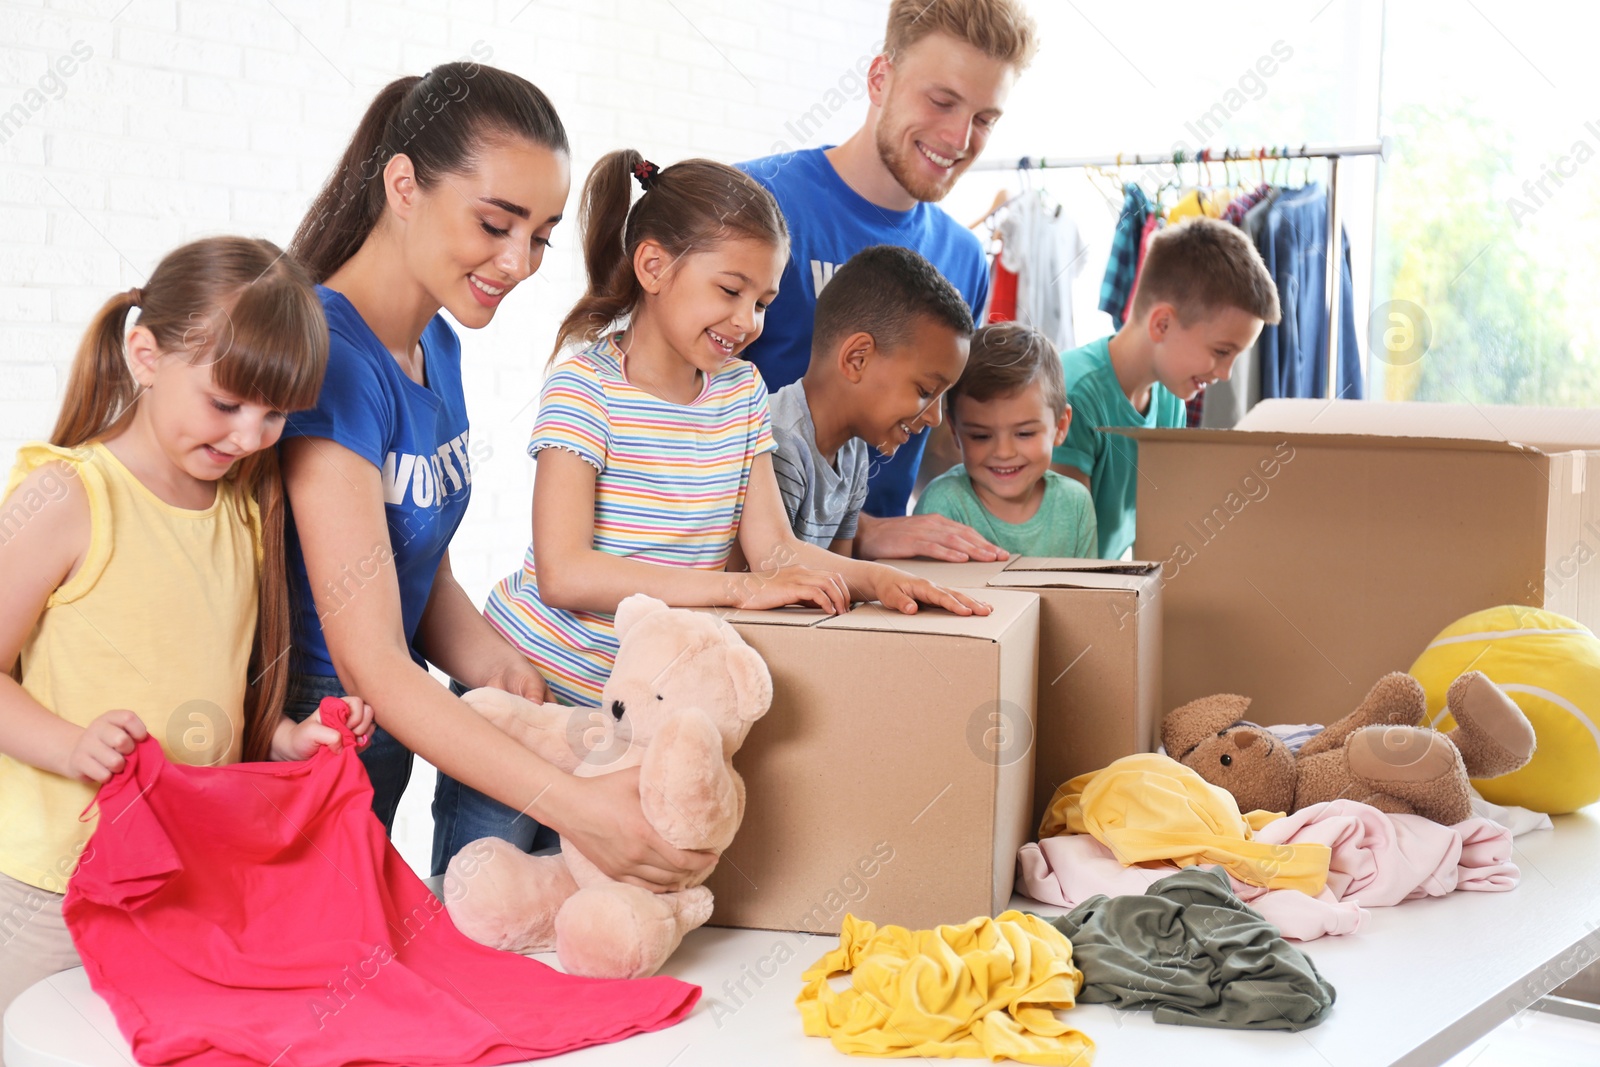 Photo of Volunteers with children sorting donation goods indoors